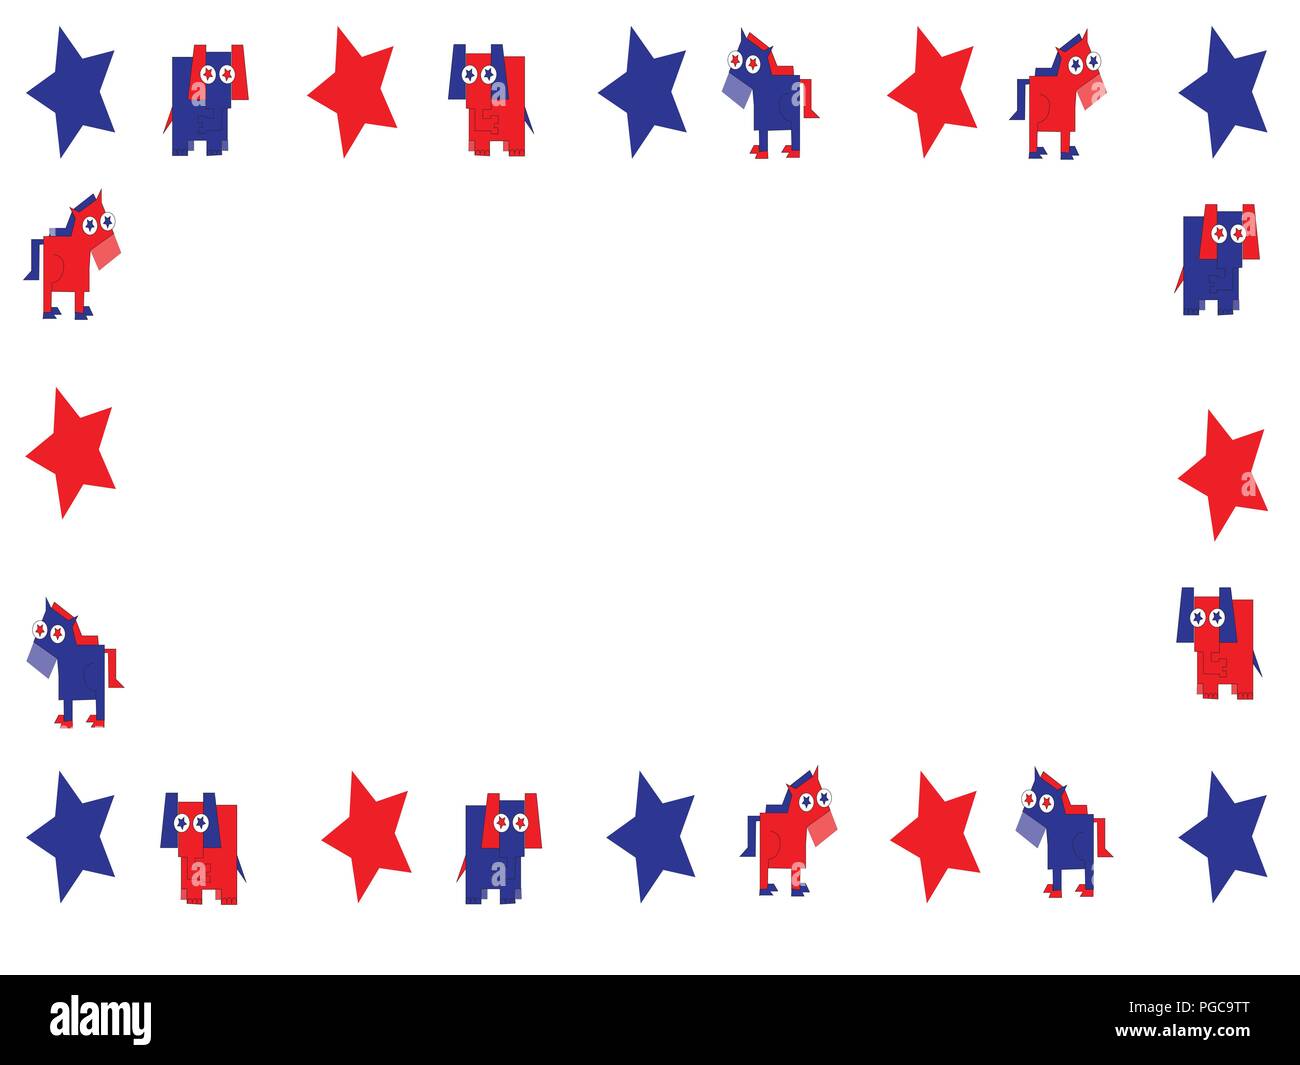 Rot, Weiß und Blau GOP Elefant und der Demokrat Esel mit Sterne in Rand oder Rahmen mit kopieren. Stock Vektor